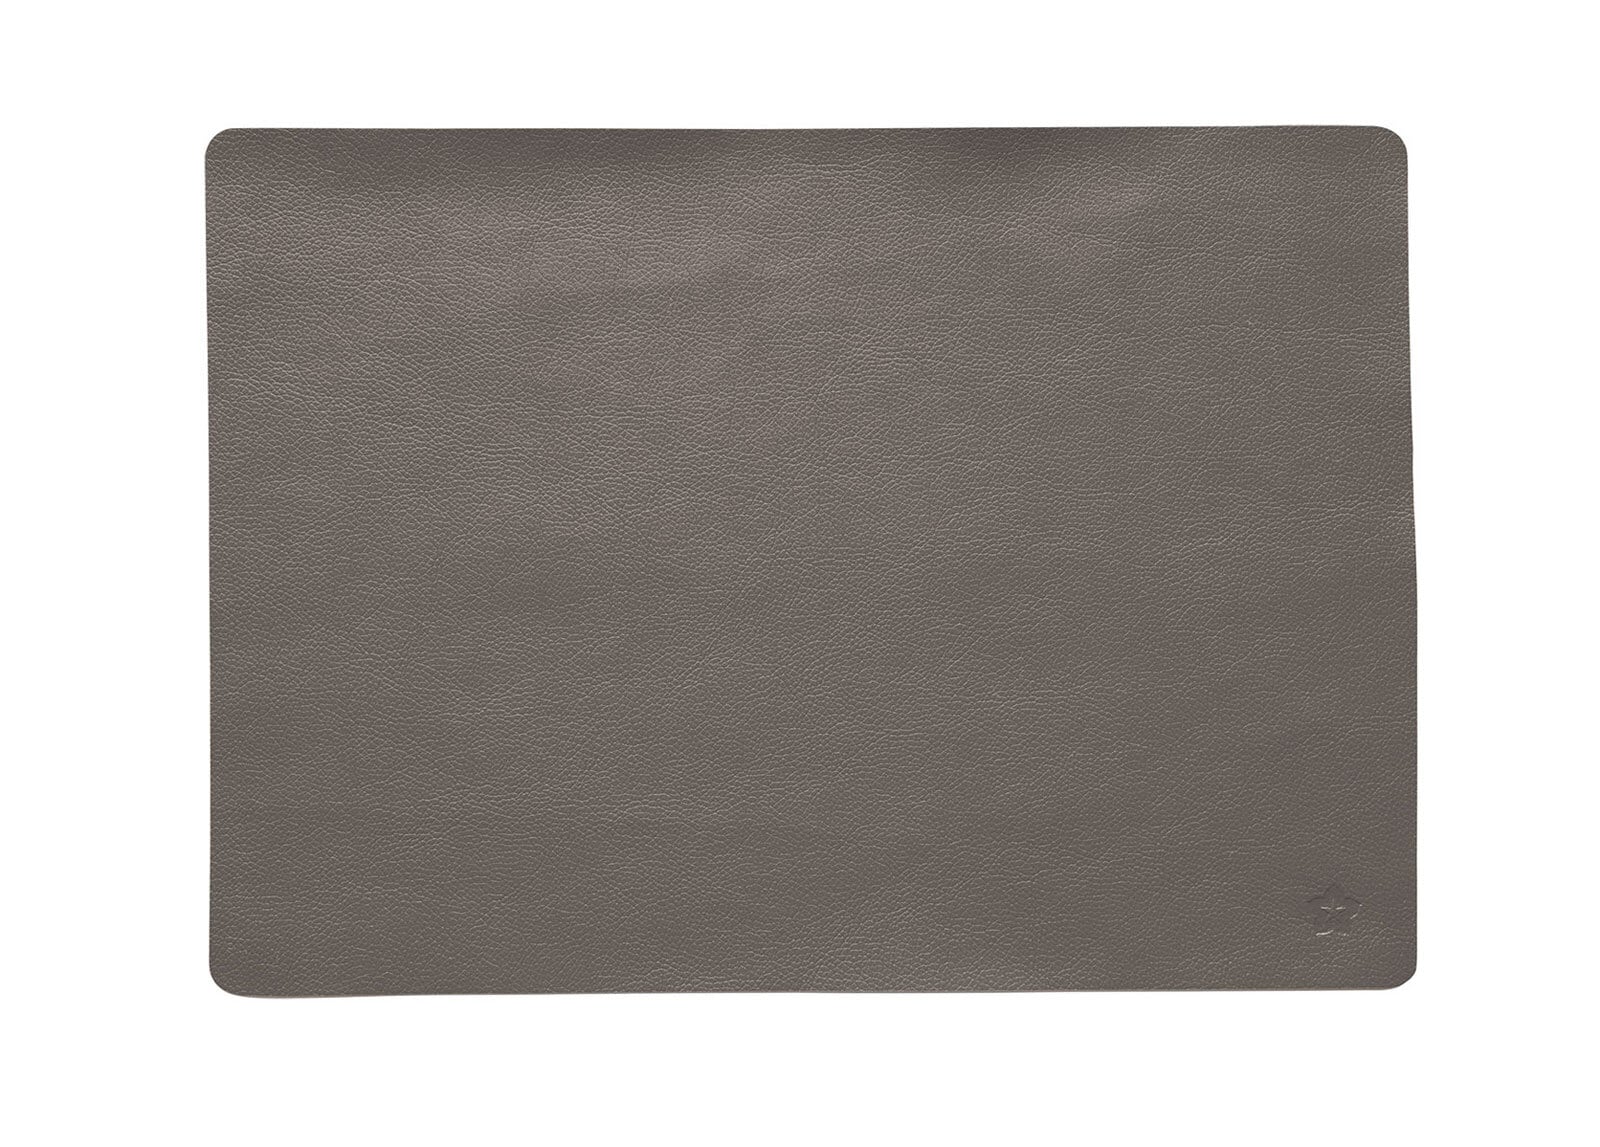 pichler Tischset JAZZ 33 x 46 cm grau/braun